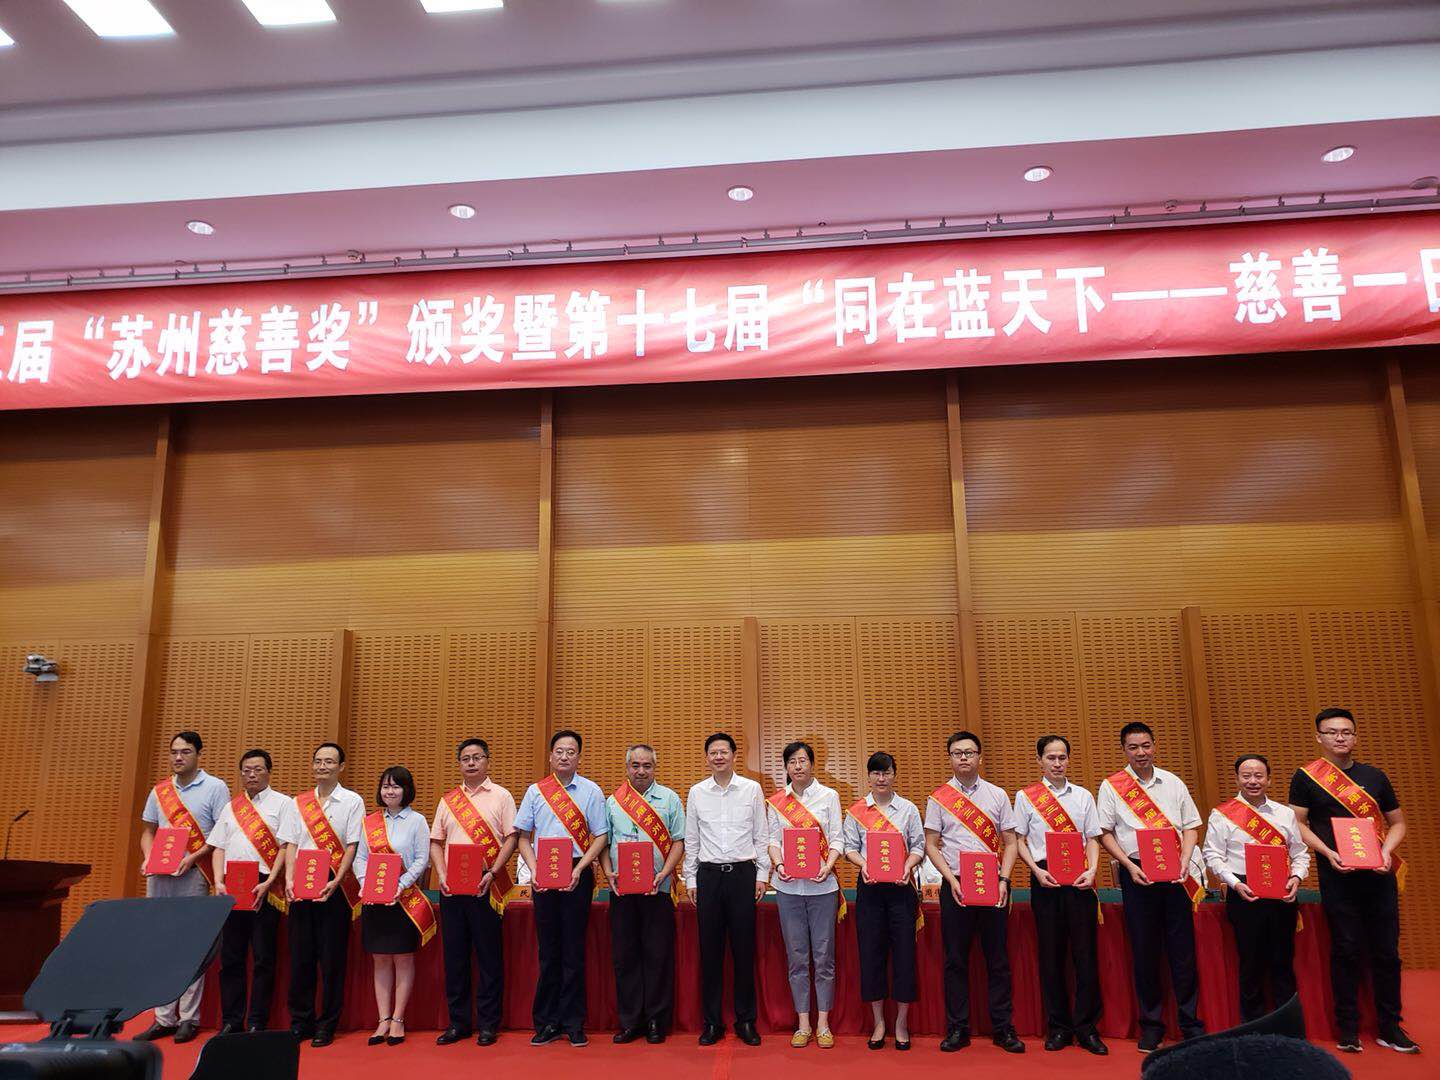 Mo Lindi, presidente de weheartangelina, ganó el "Premio de Caridad de Jiangsu a la persona con mayor donación de caridad"